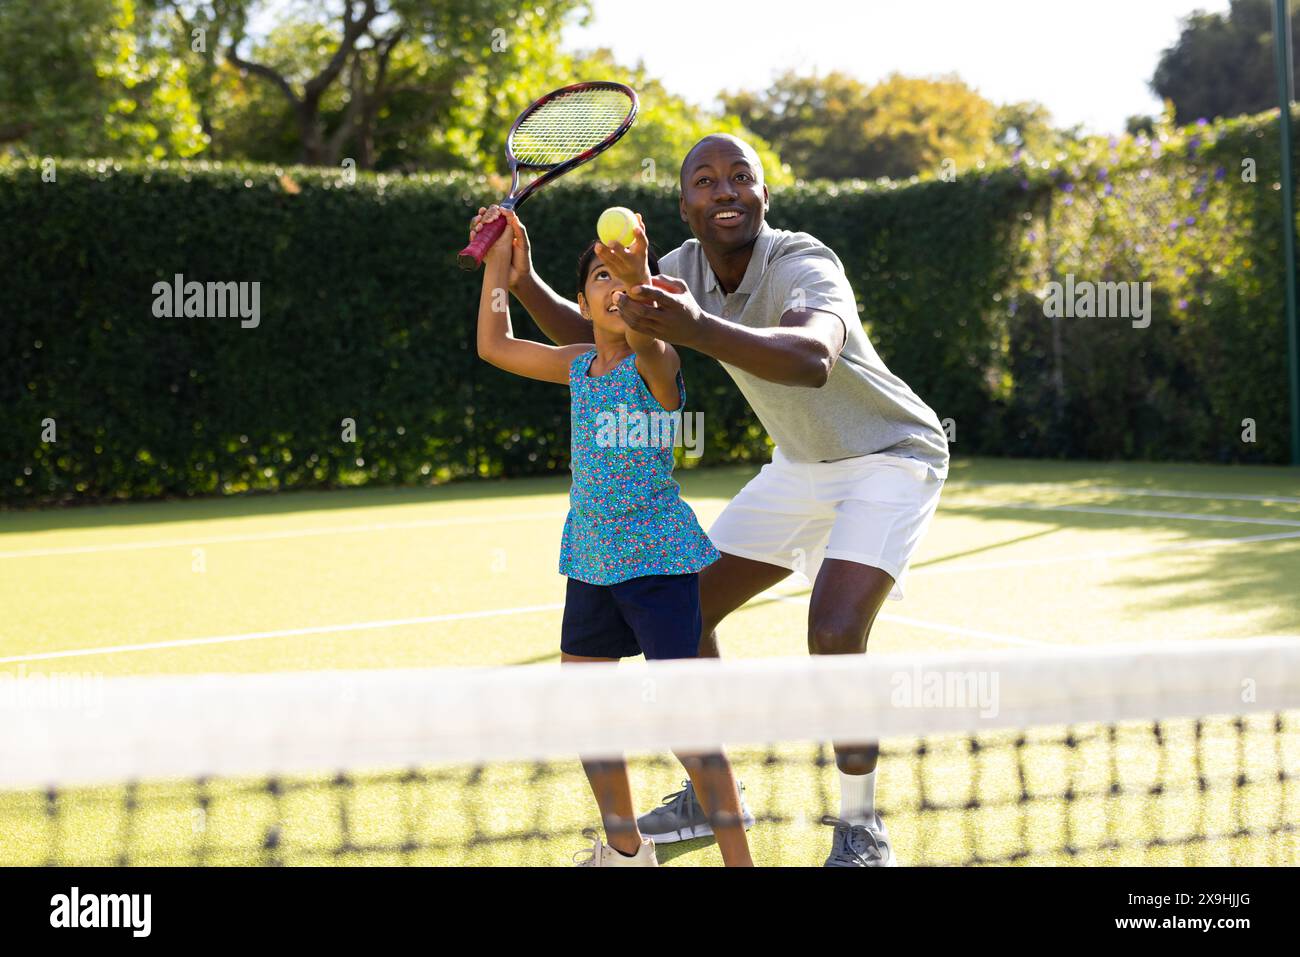 All'aperto, padre e figlia diversi giocano a tennis nelle giornate di sole Foto Stock